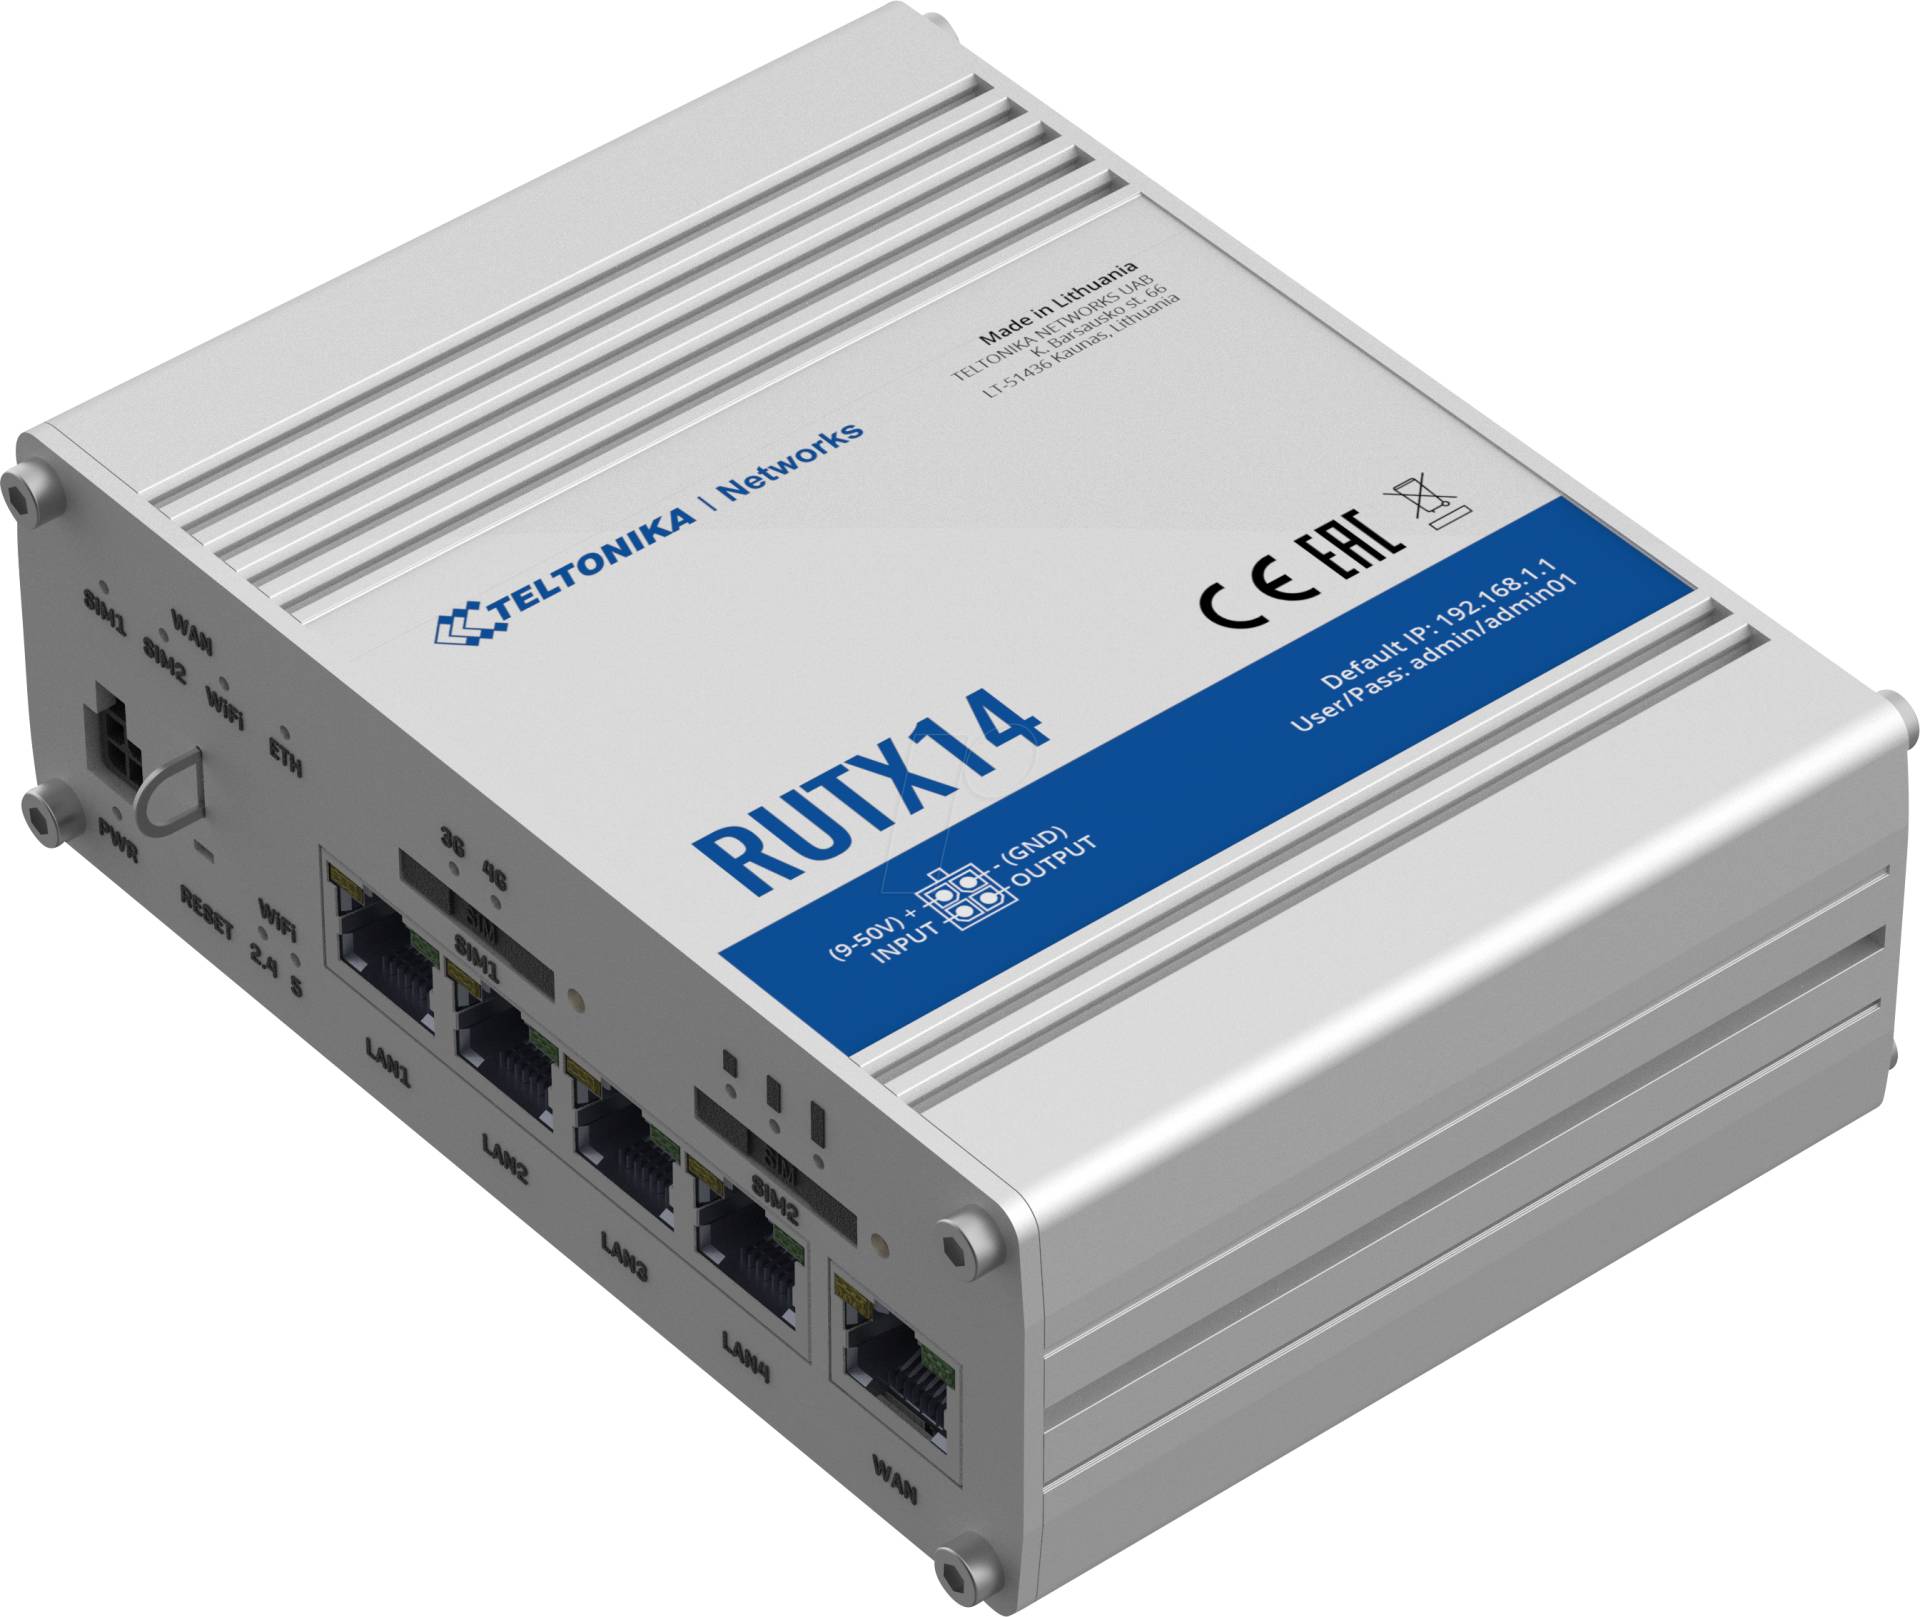 TELTONIKA RUTX14 - Industrial LTE Router, AC WLAN, MU-MIMO, Bluetooth LE von TELTONIKA